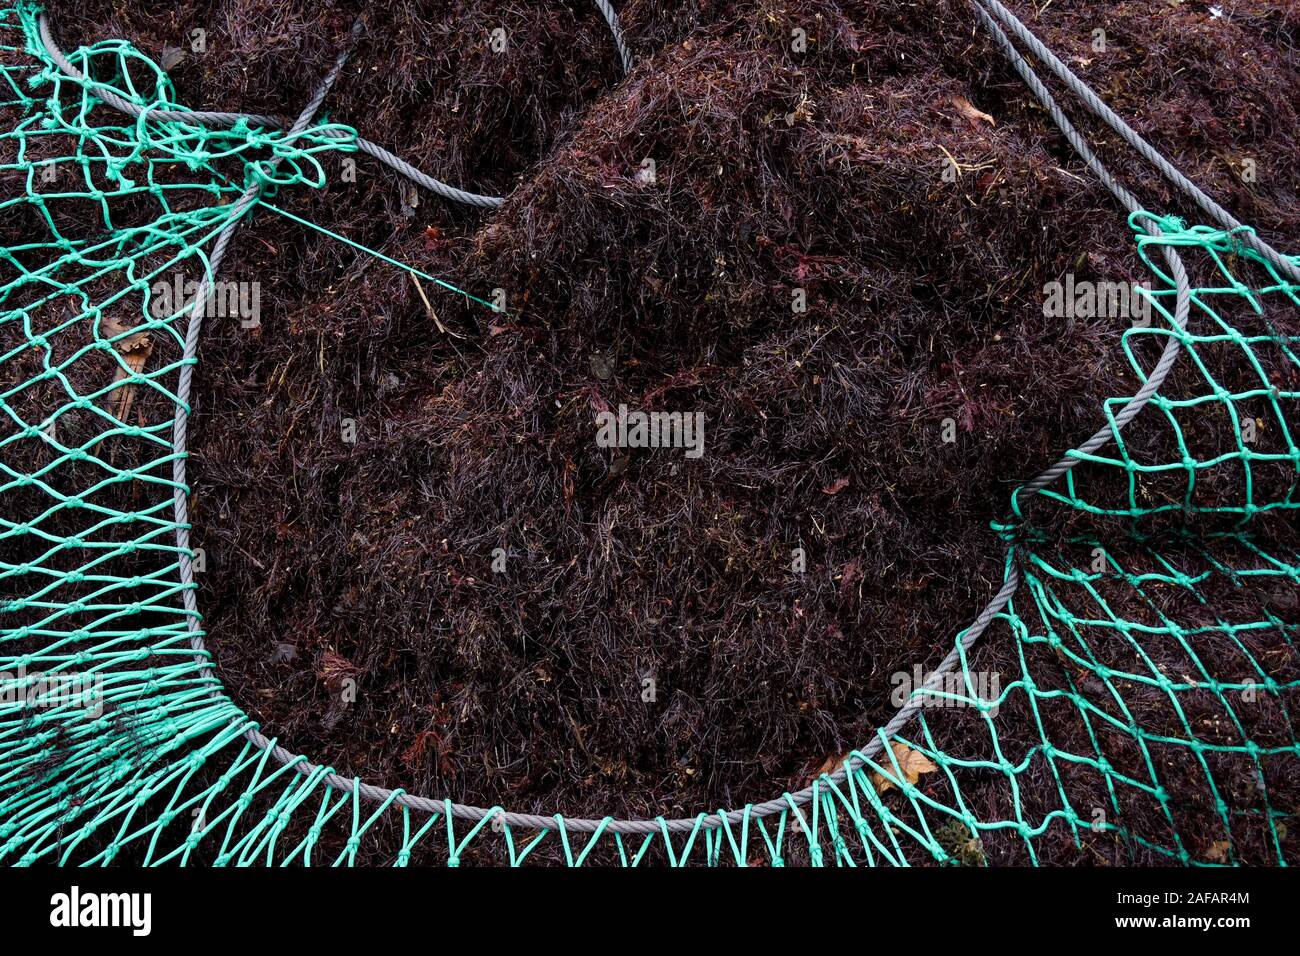 Fischernetze voll der roten Algen, Saint-Jean-de-Luz, Aquitanien, Frankreich Stockfoto